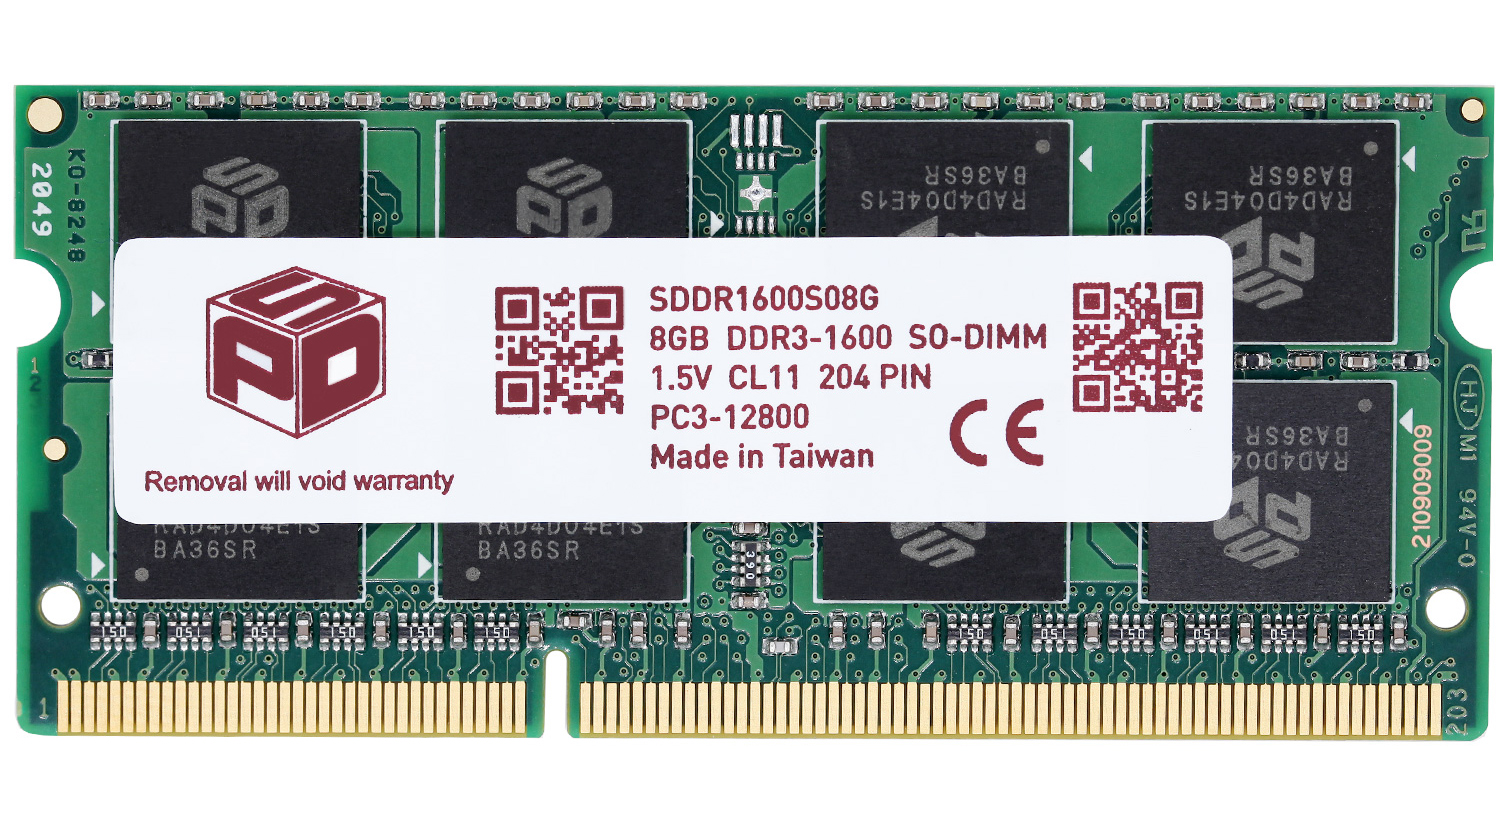 キングストン Kingston デスクトップPC用 メモリ DDR3L 1600 (PC3L